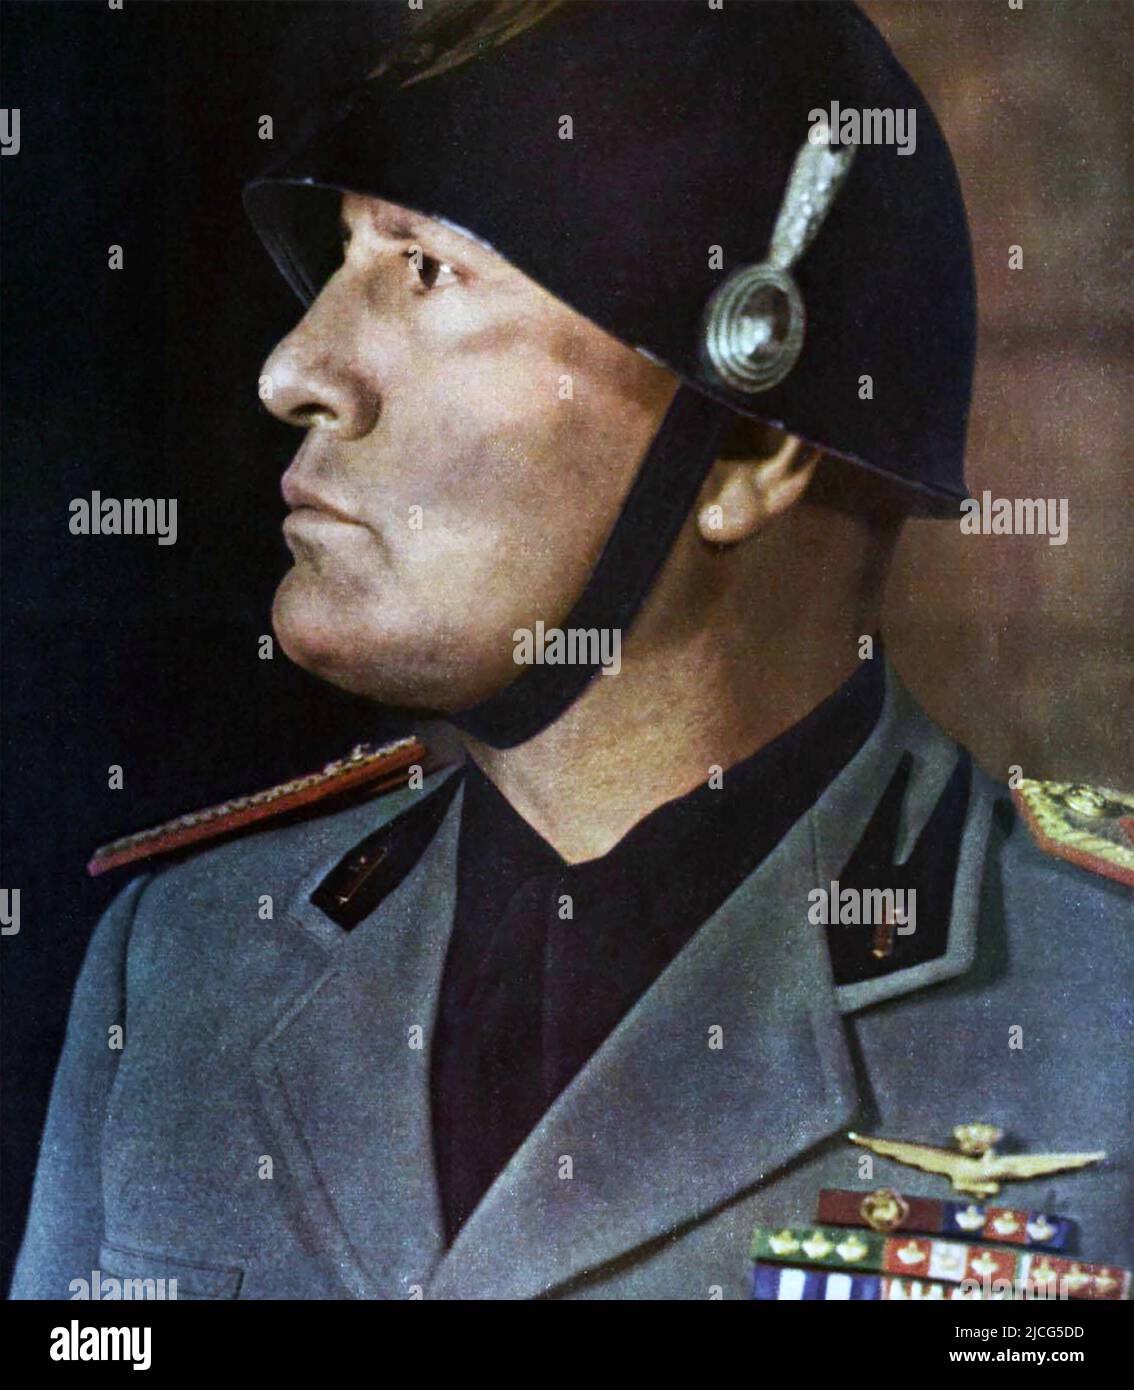 BENITO MUSSOLINI (1883-1945) Italian dictator in 1940 Stock Photo